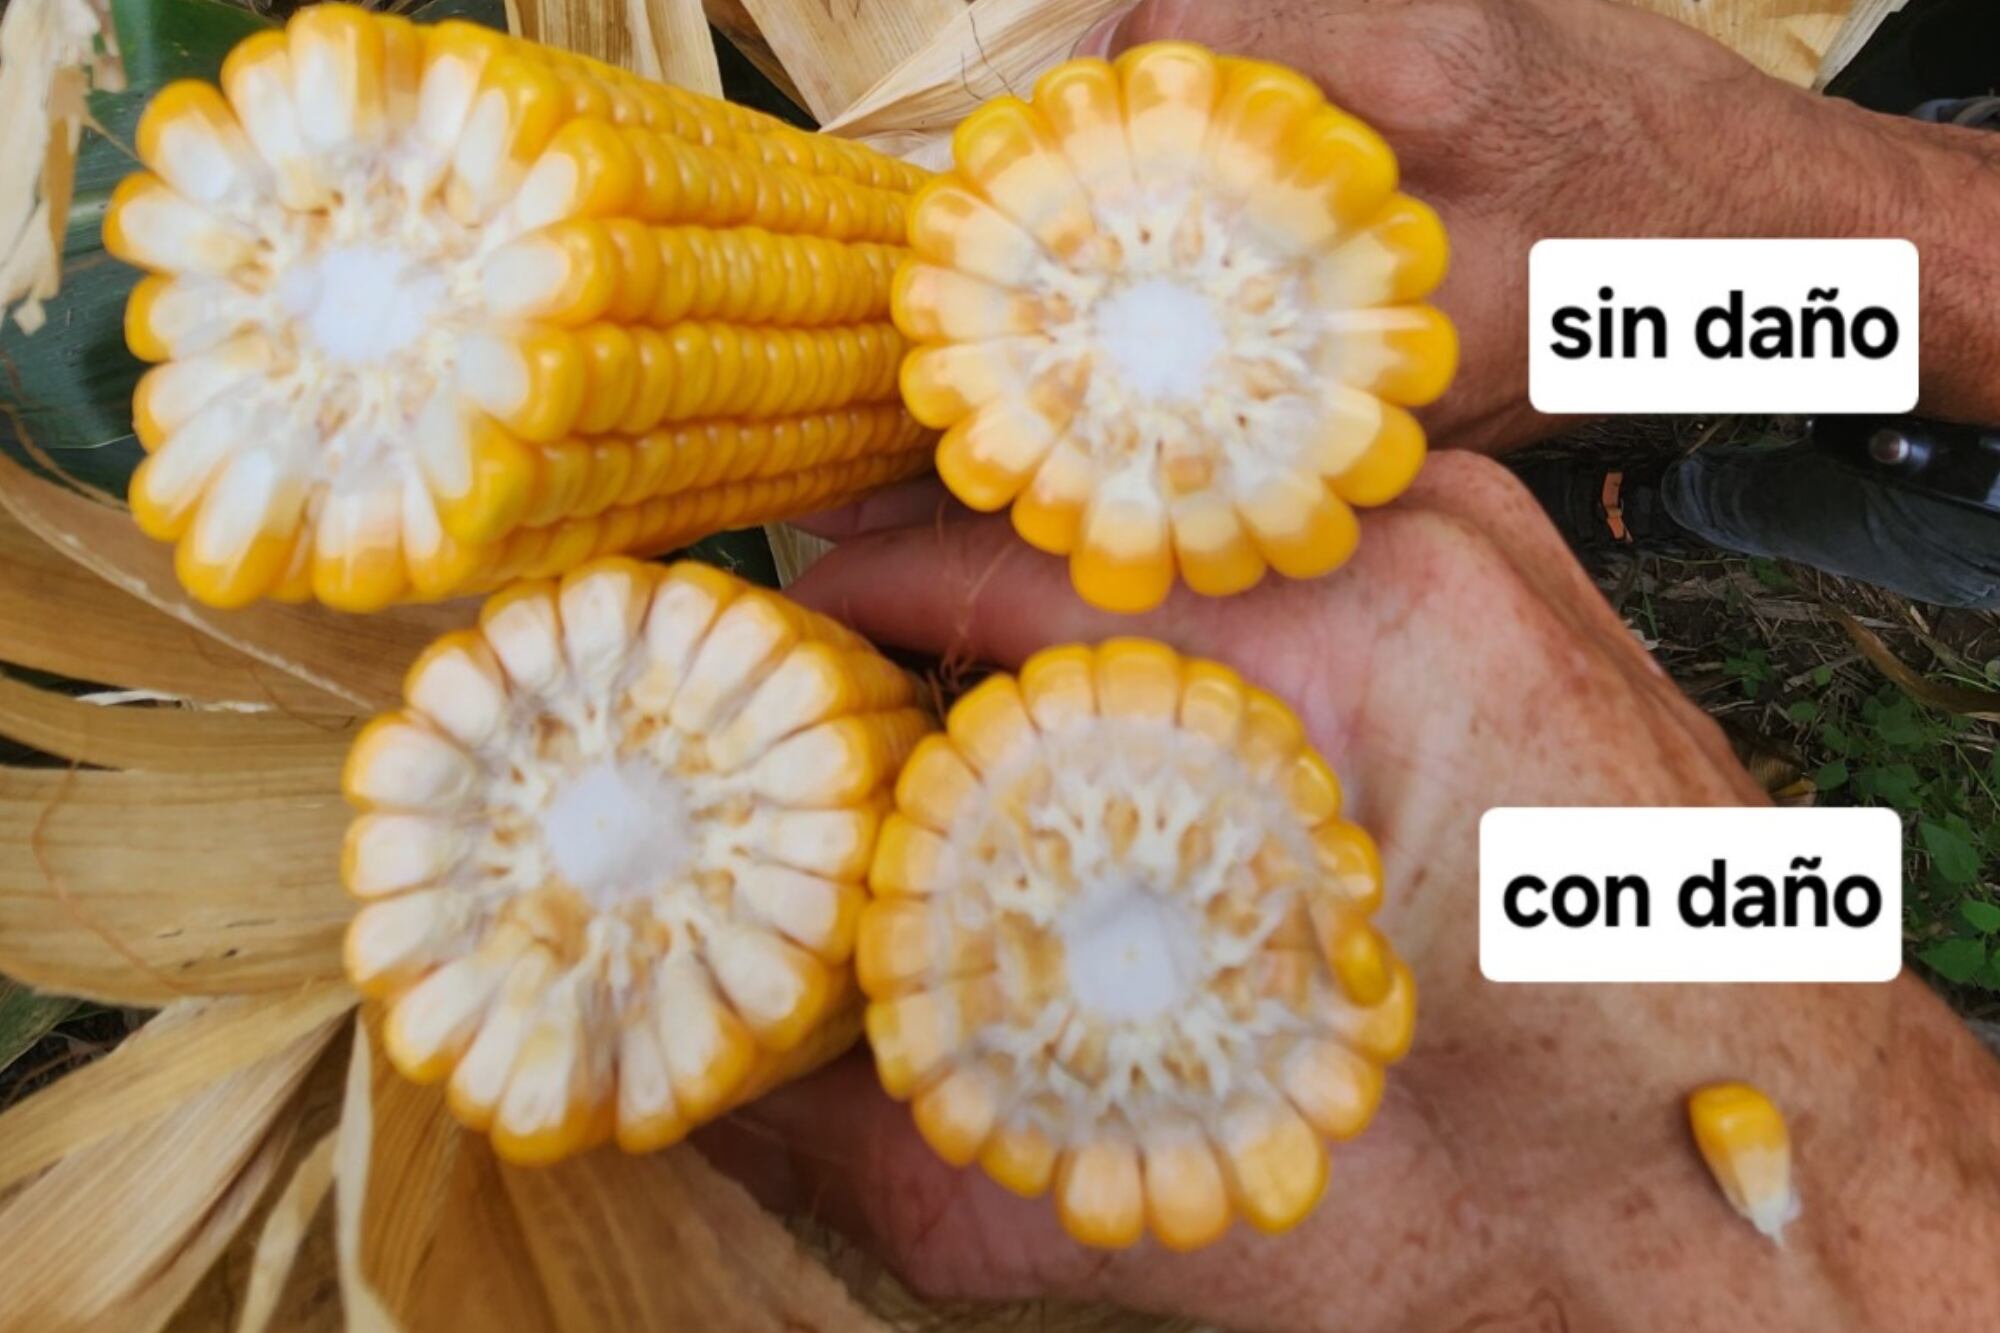 Los productores temen que la plaga afecte a próximas siembras de maíz tardío